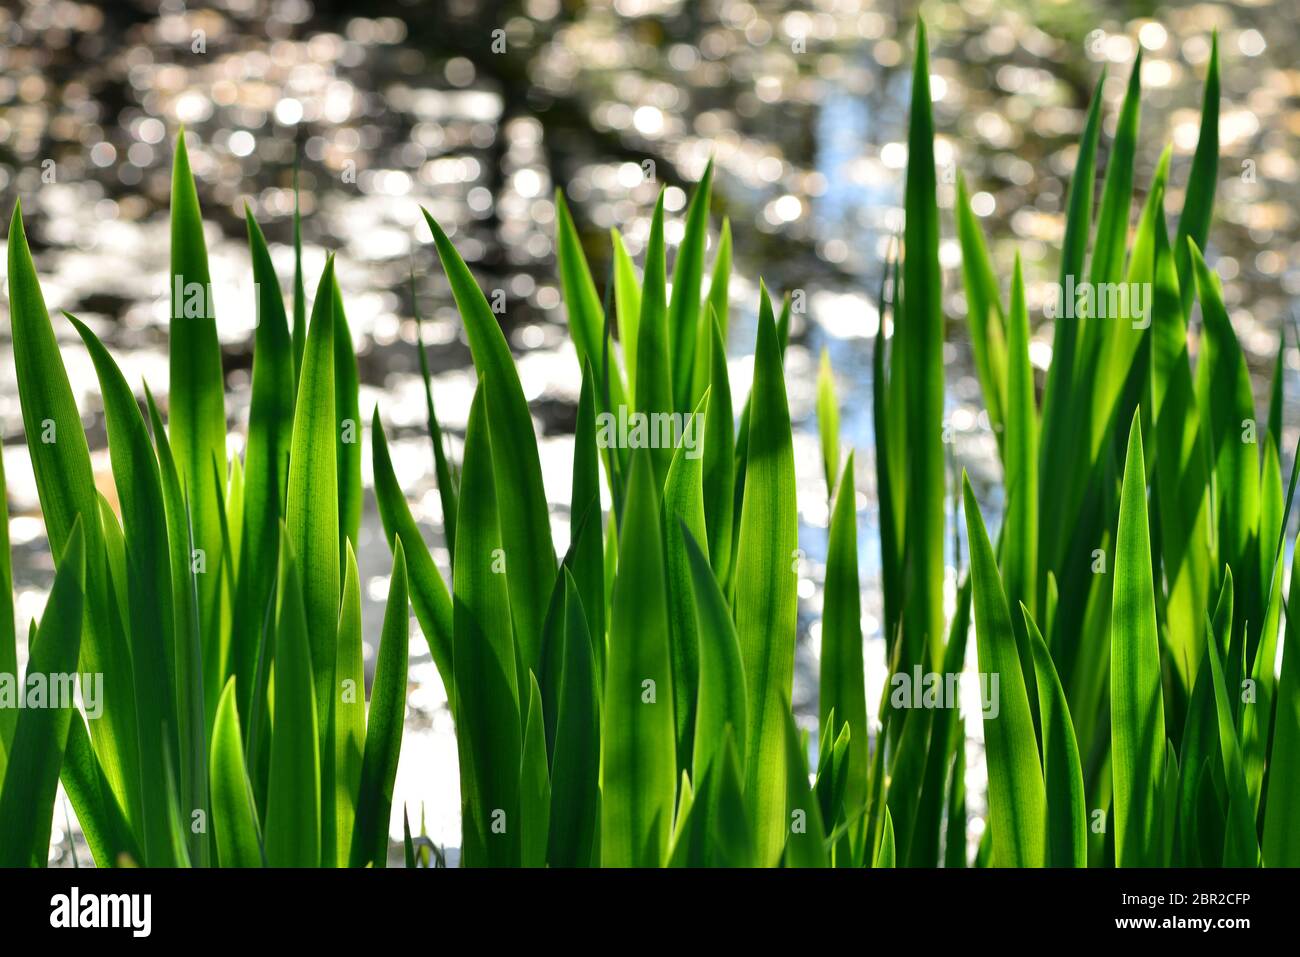 Un fondo naturale di canne verdi contro i riflessi dell'acqua in uno stagno. Foto Stock